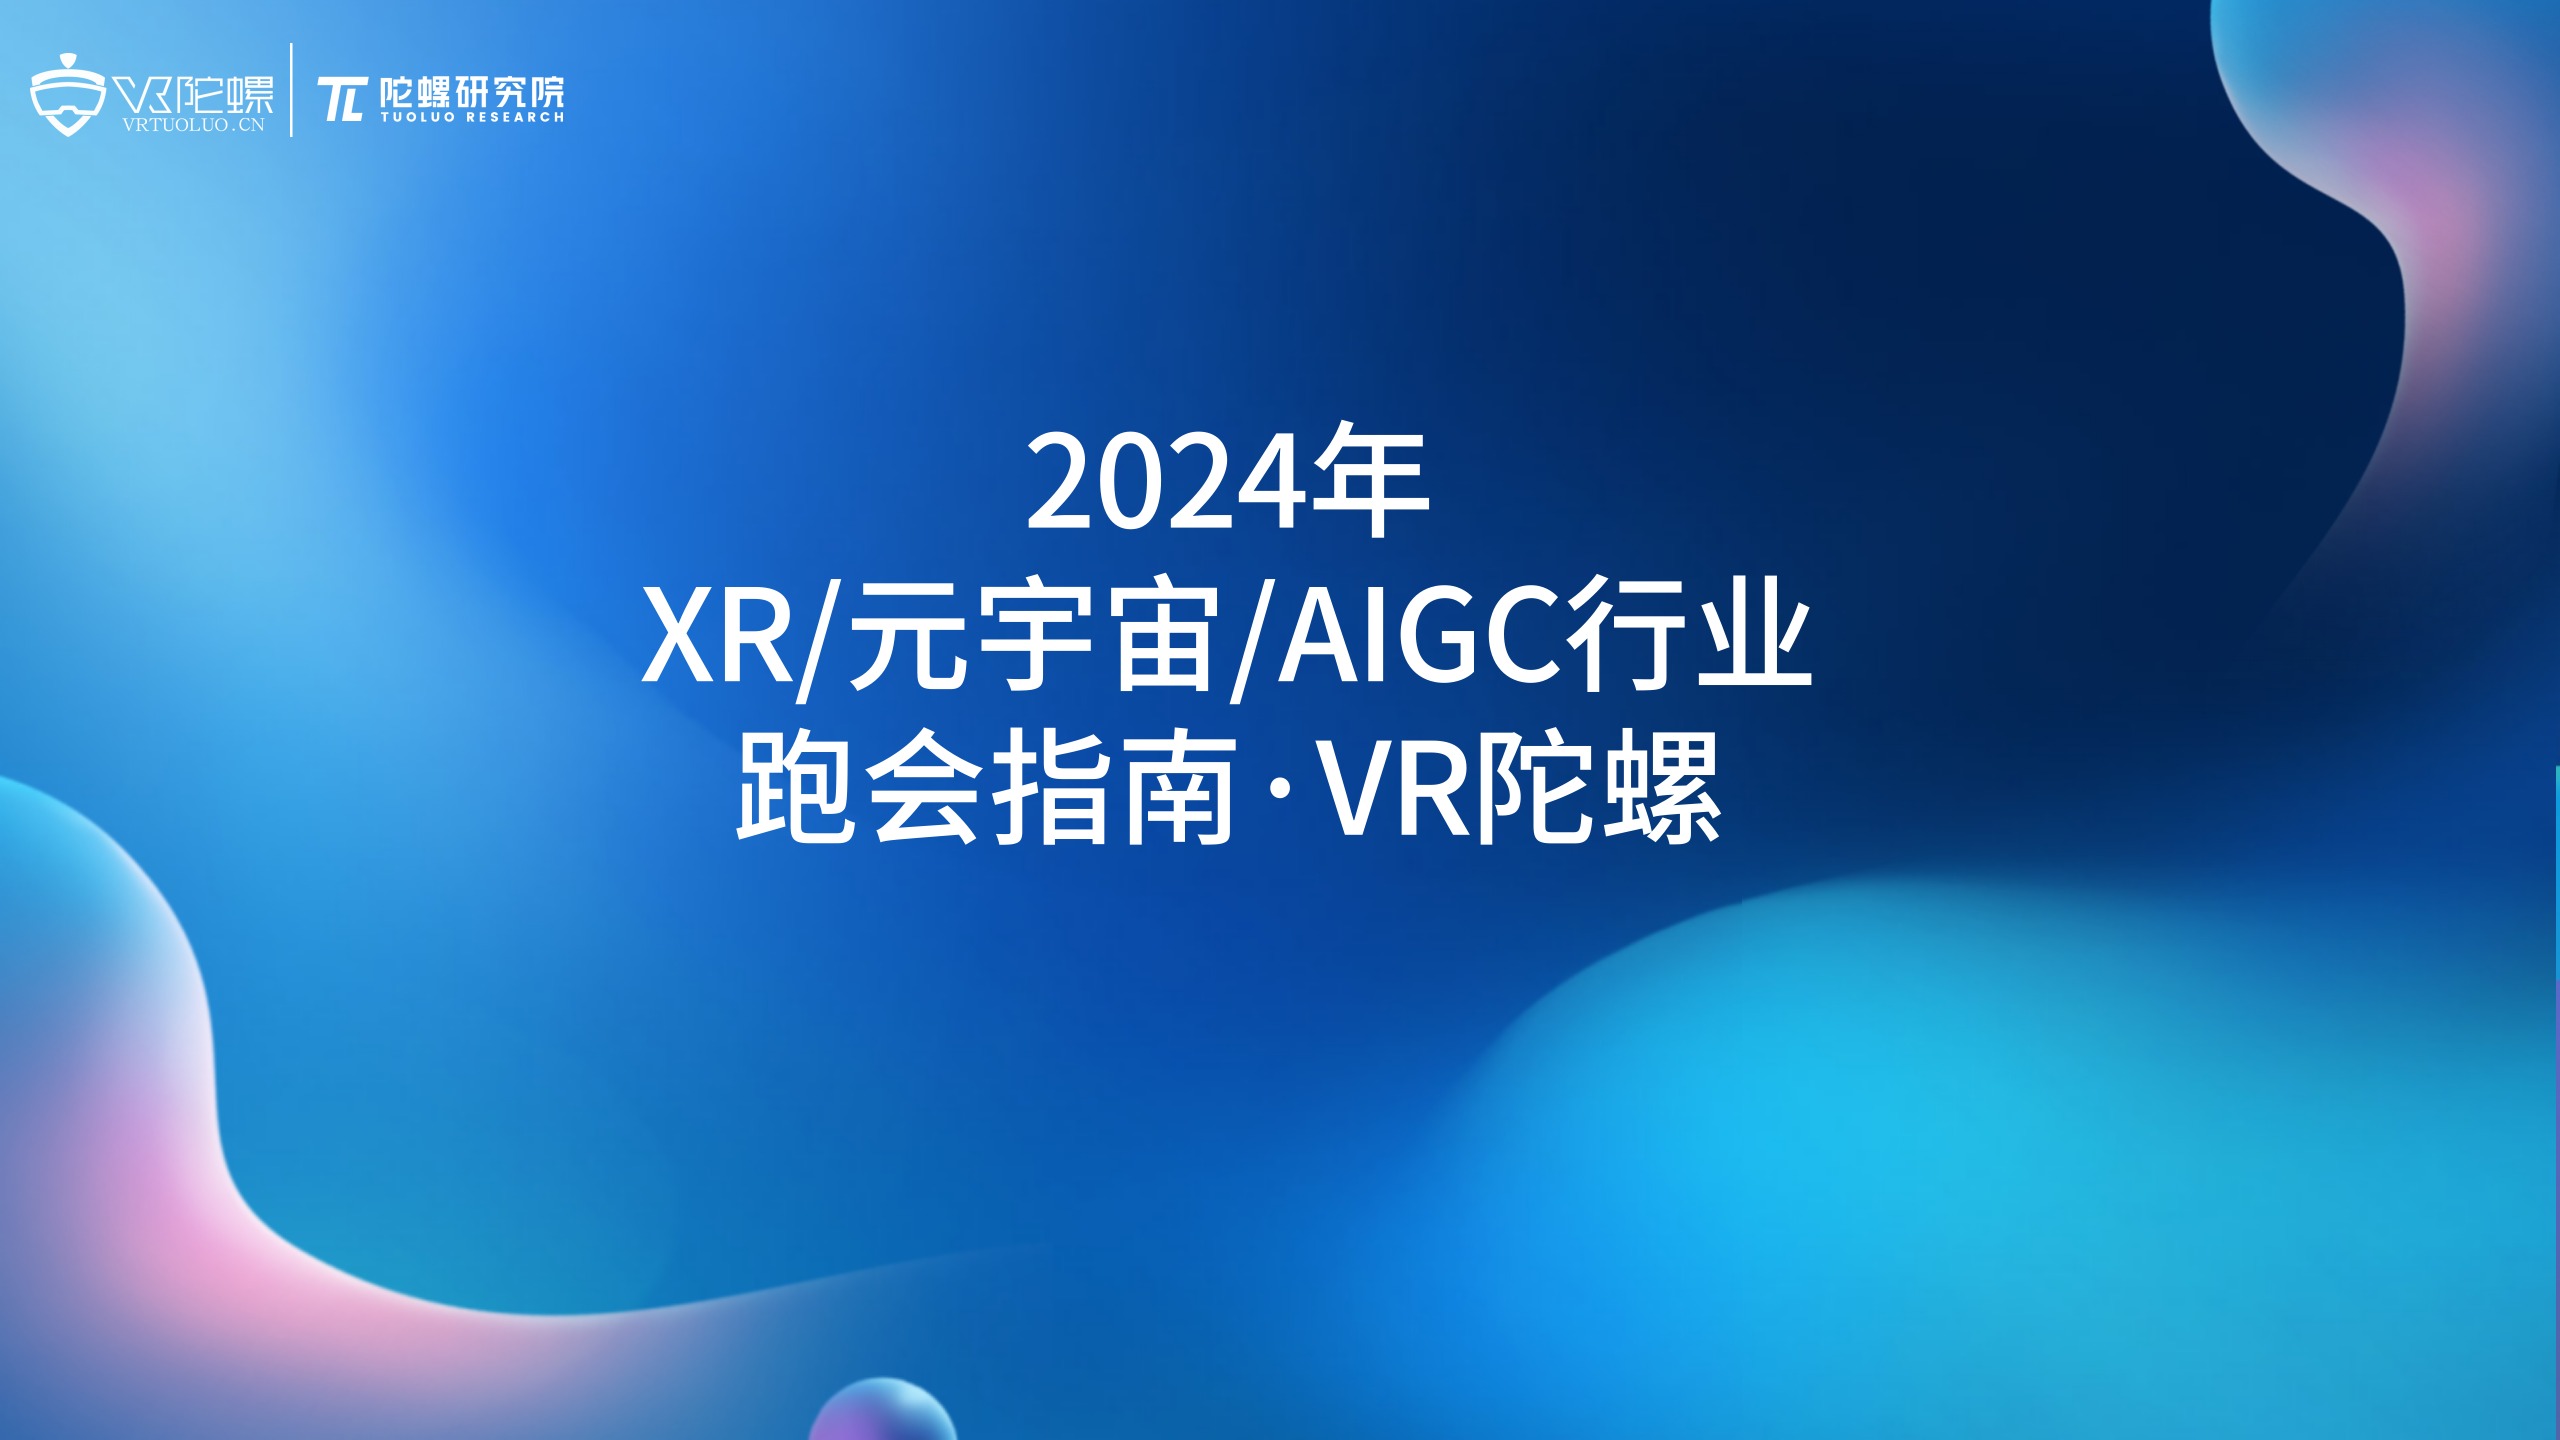 陀螺研究院发布《2024年XR/元宇宙/AIGC行业跑会指南》